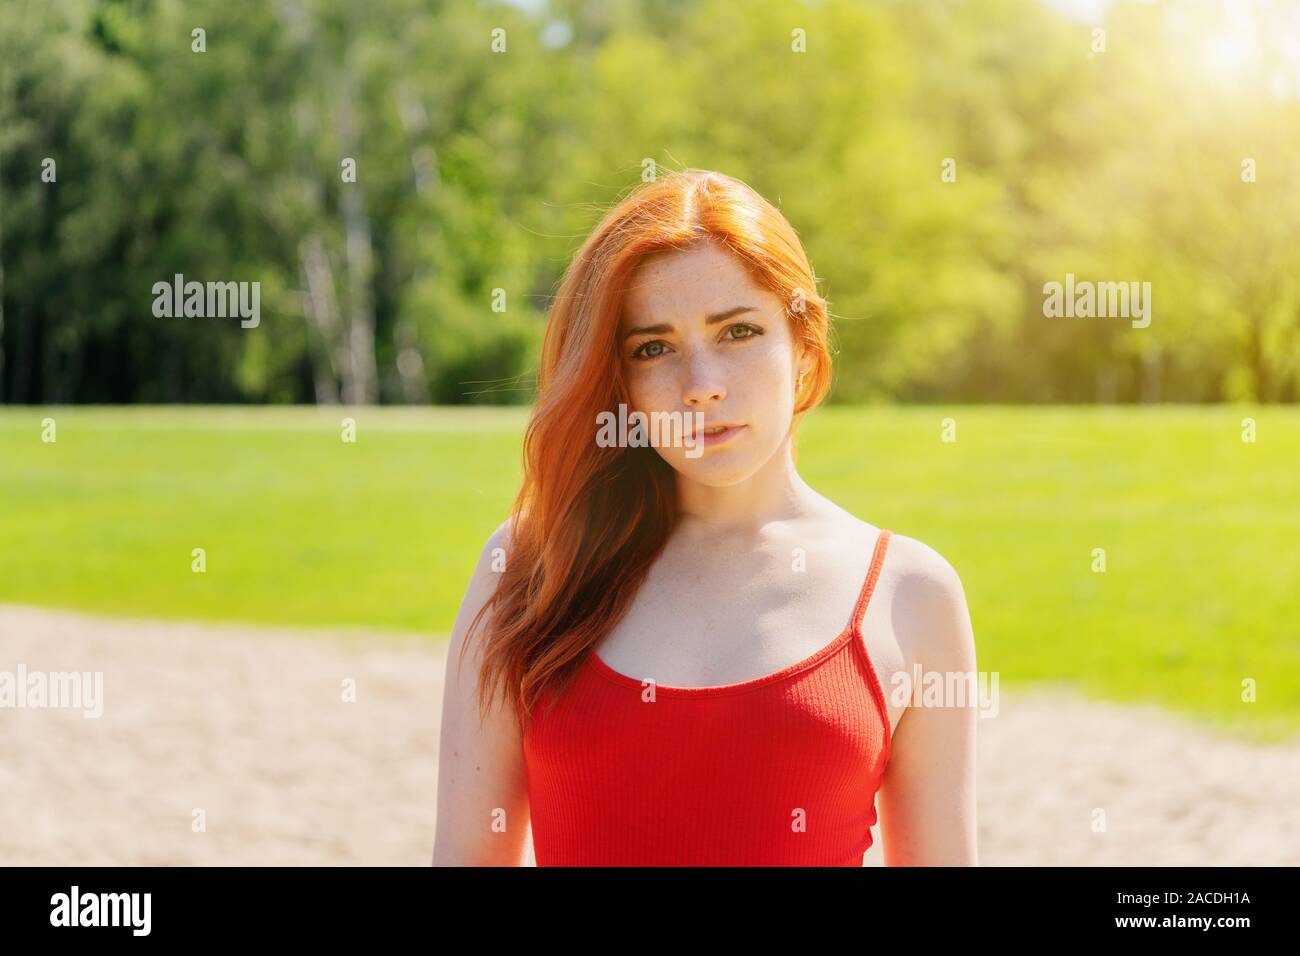 Junge Frau das Tragen der roten riemchen top im Freien in einem Park auf einem sonnigen Sommertag Stockfoto